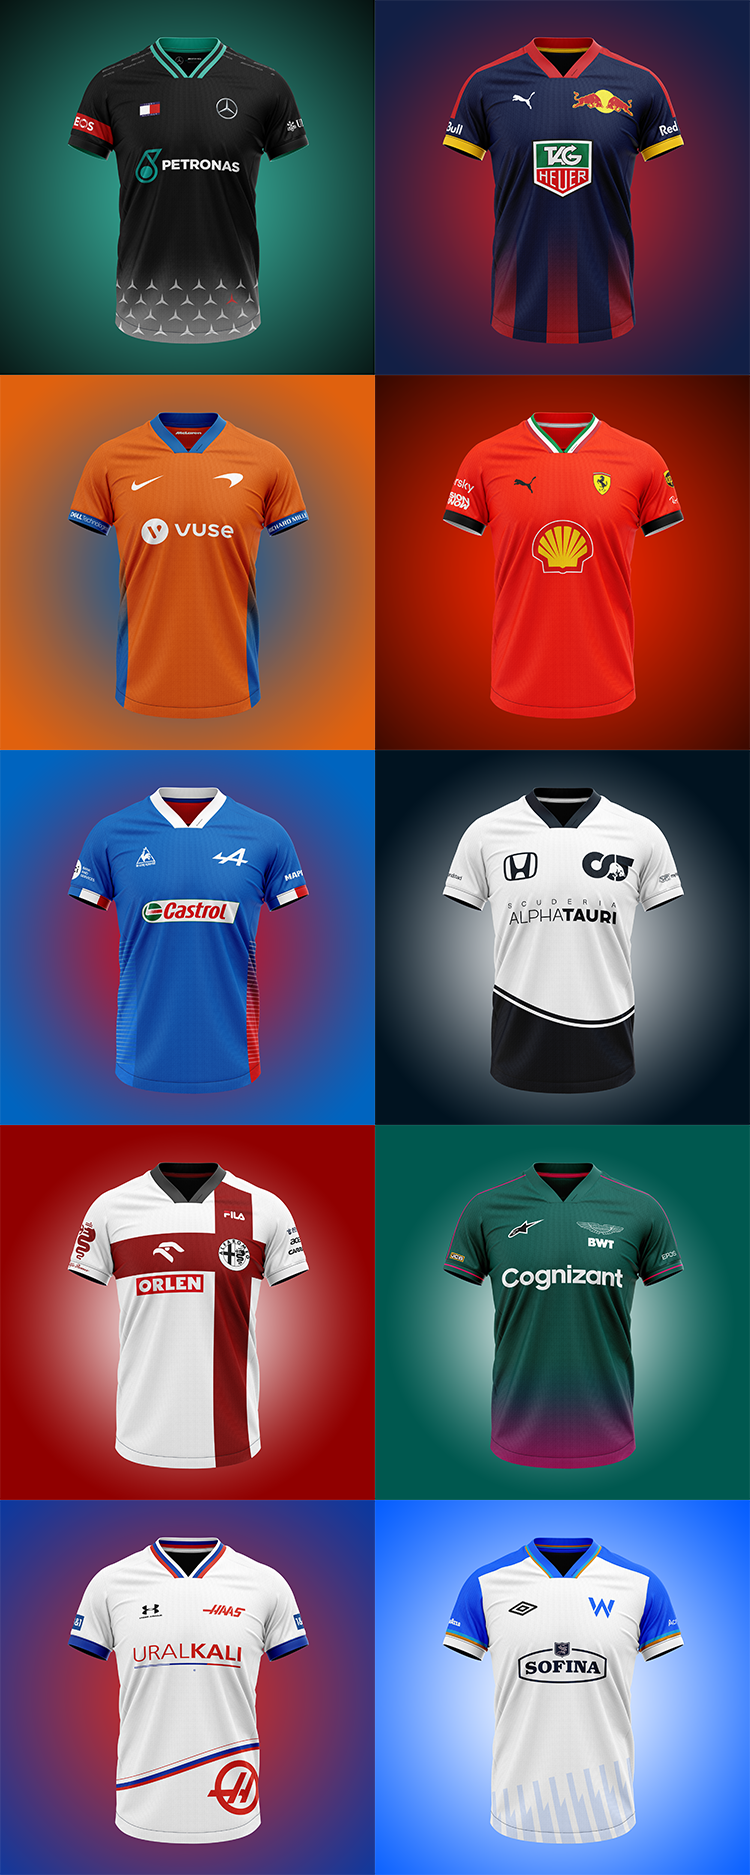 F1 Teams as Football Shirts